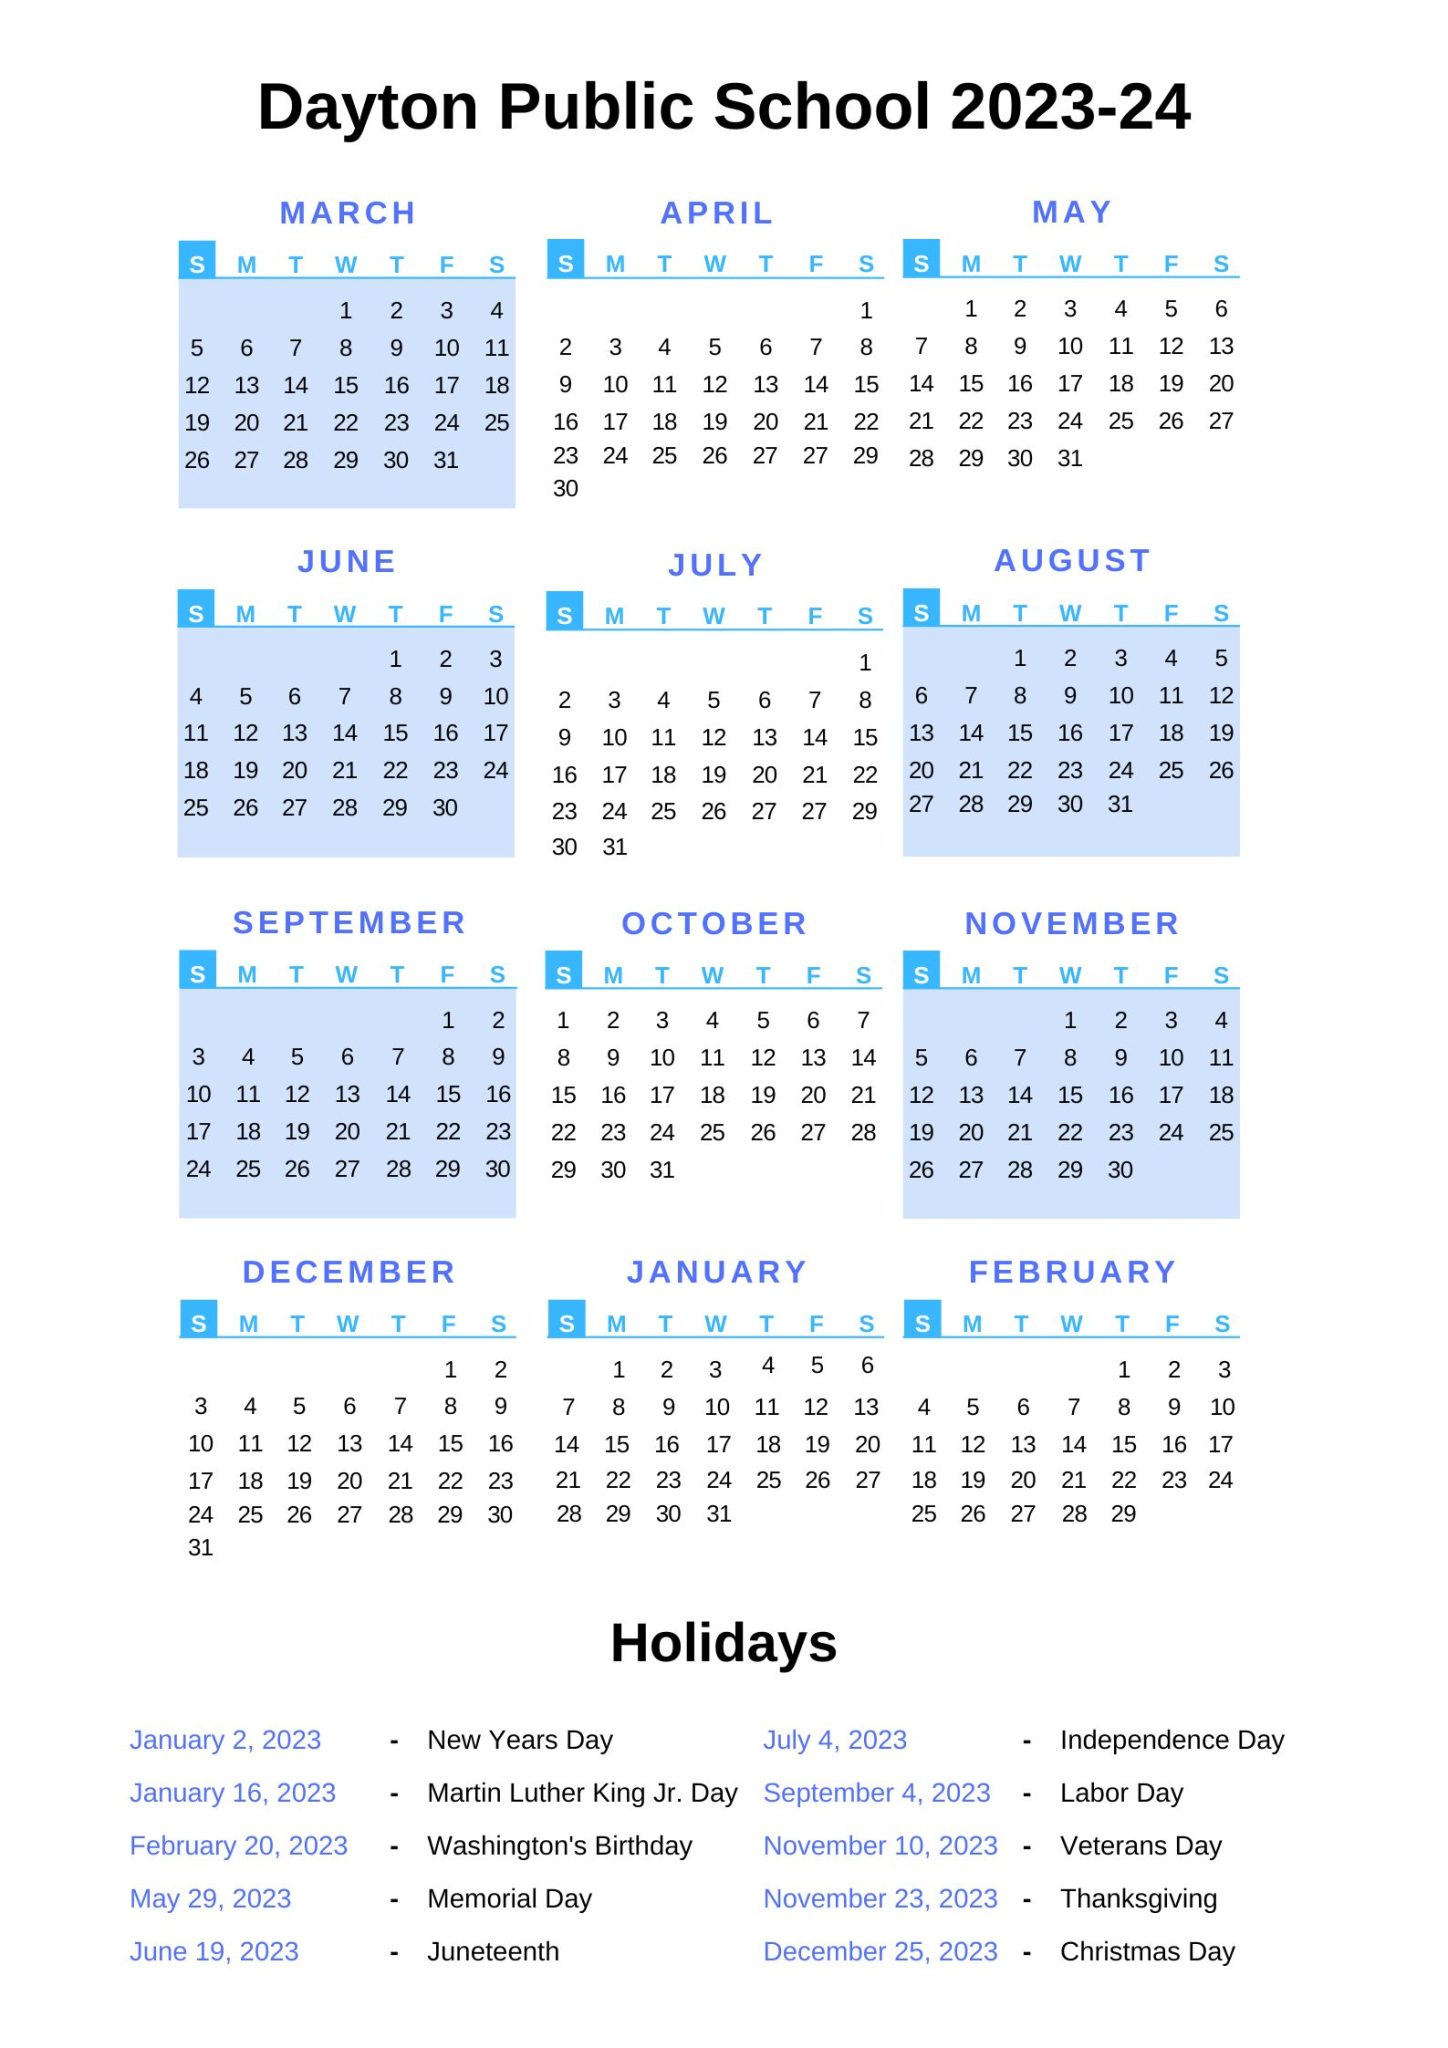 dayton-public-schools-calendar-2023-24-with-holidays